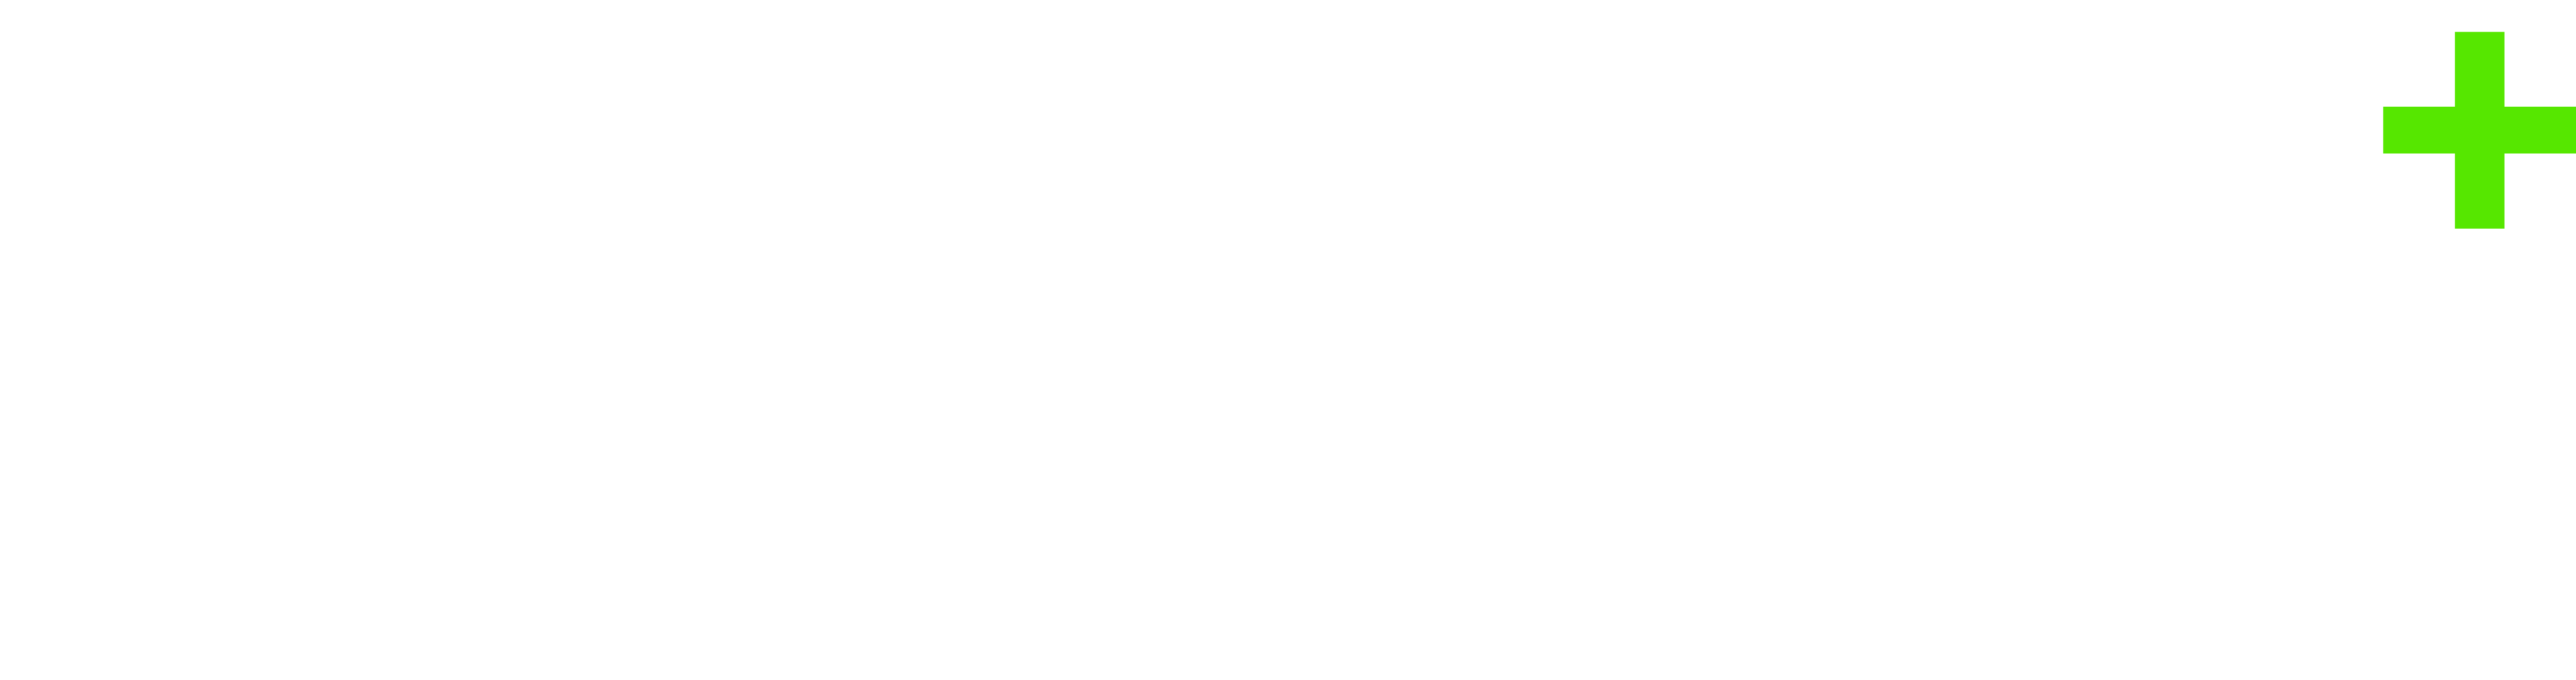 ecogold-sticky-logo